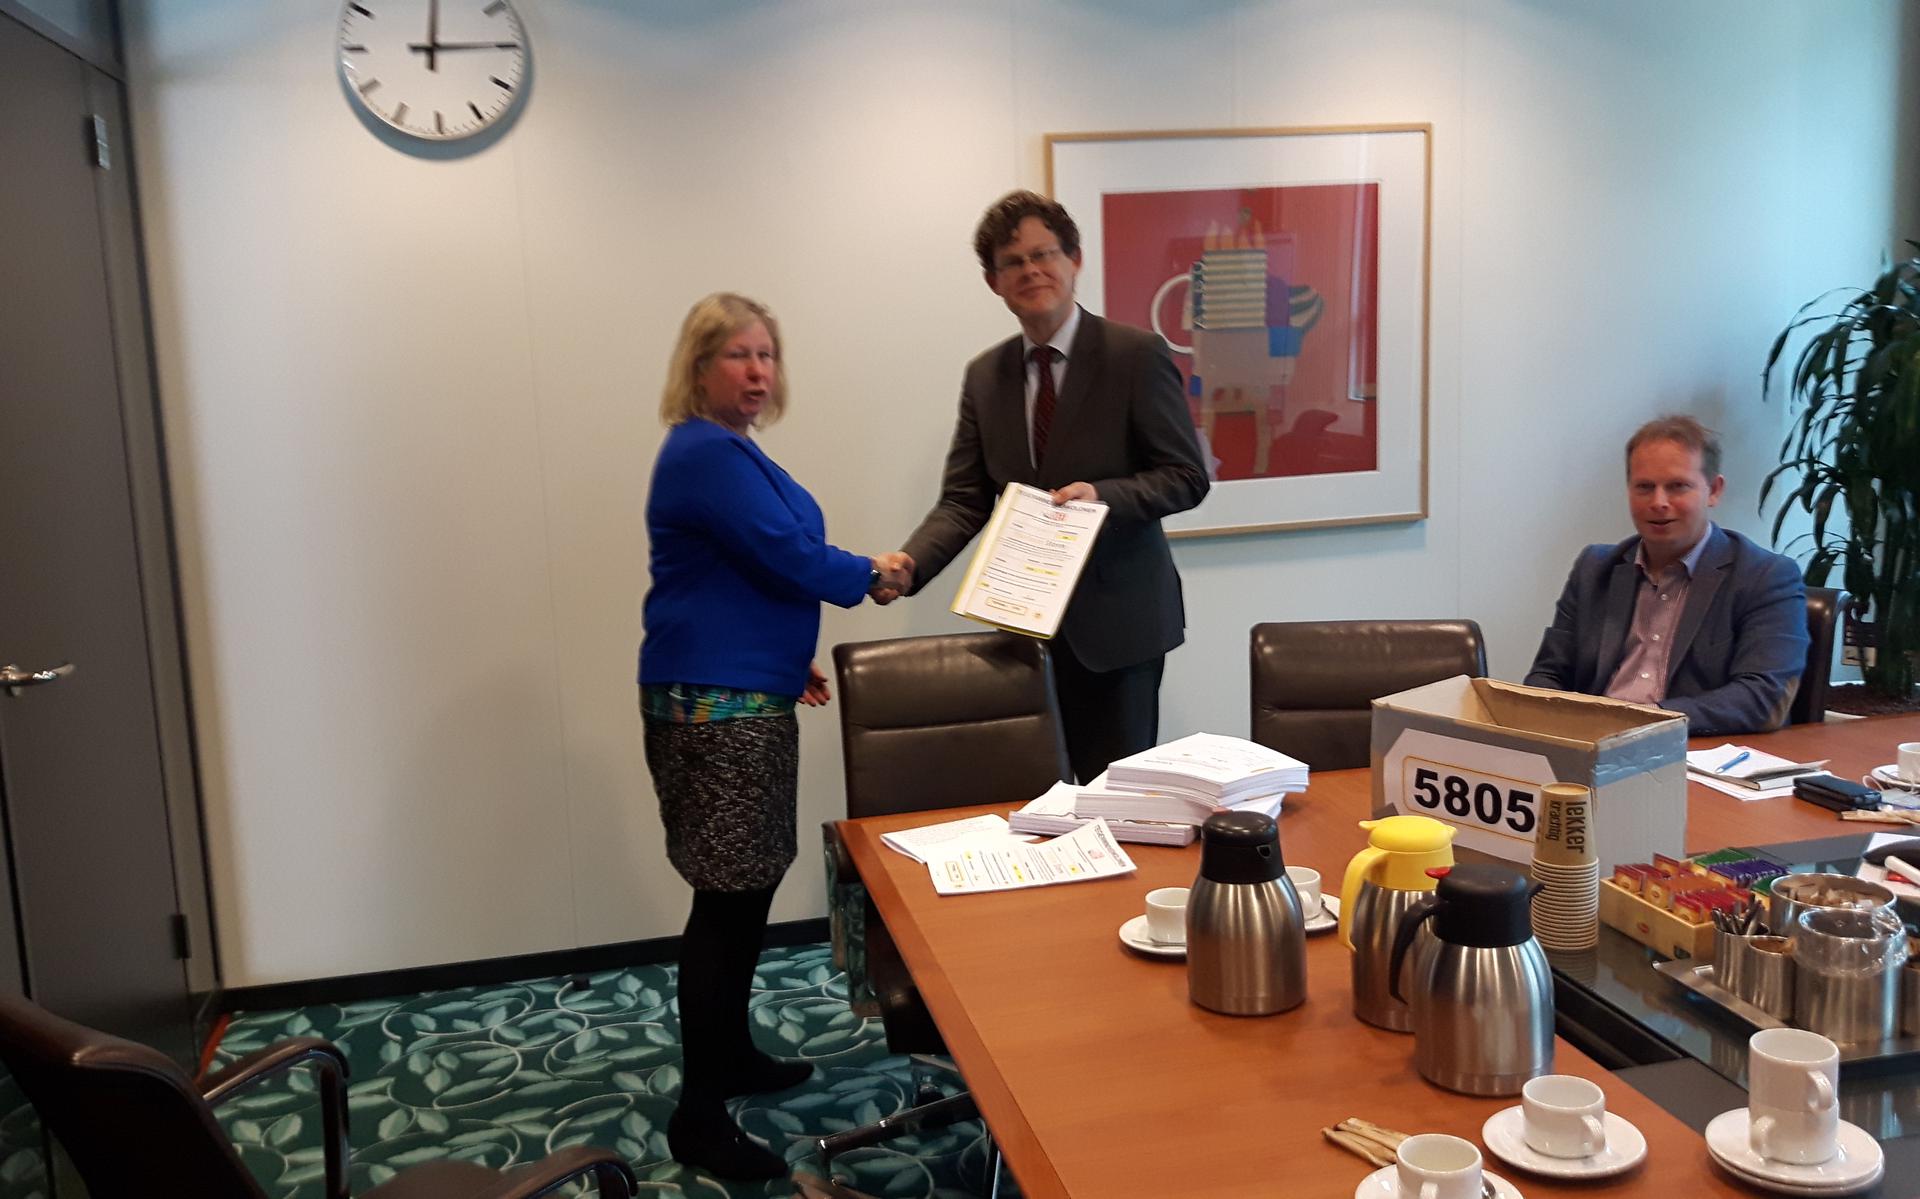 Namens de gezamenlijke actiegroepen overhandigde Ineke Schreuder dinsdagmorgen 3703 ondertekende documenten aan directeur Meindert Smallenbroek van het Ministerie van Economische Zaken. 